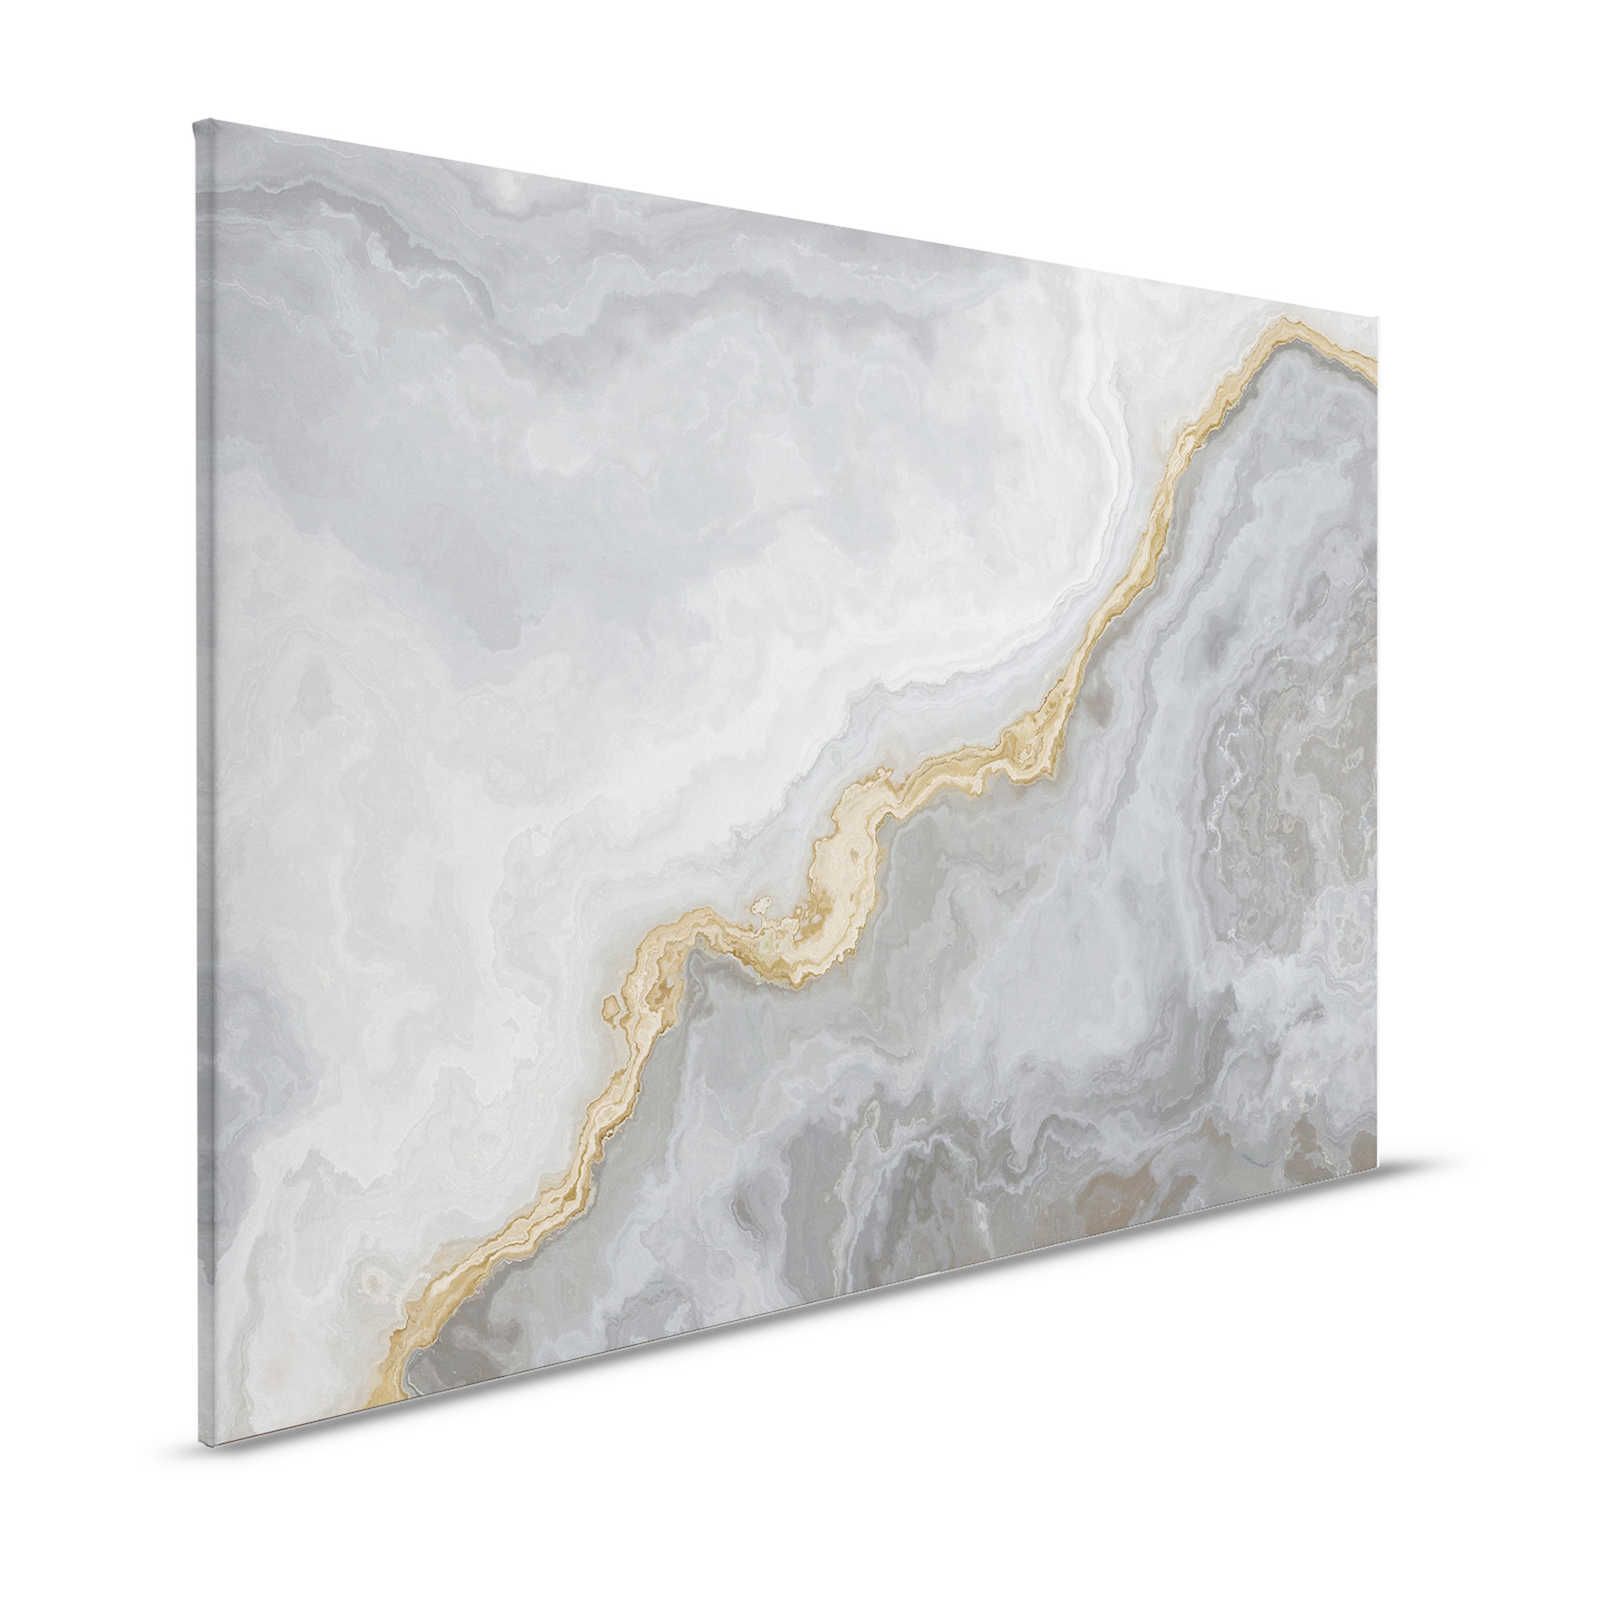 Quadro su tela in quarzo effetto pietra con marmorizzazione - 1,20 m x 0,80 m
